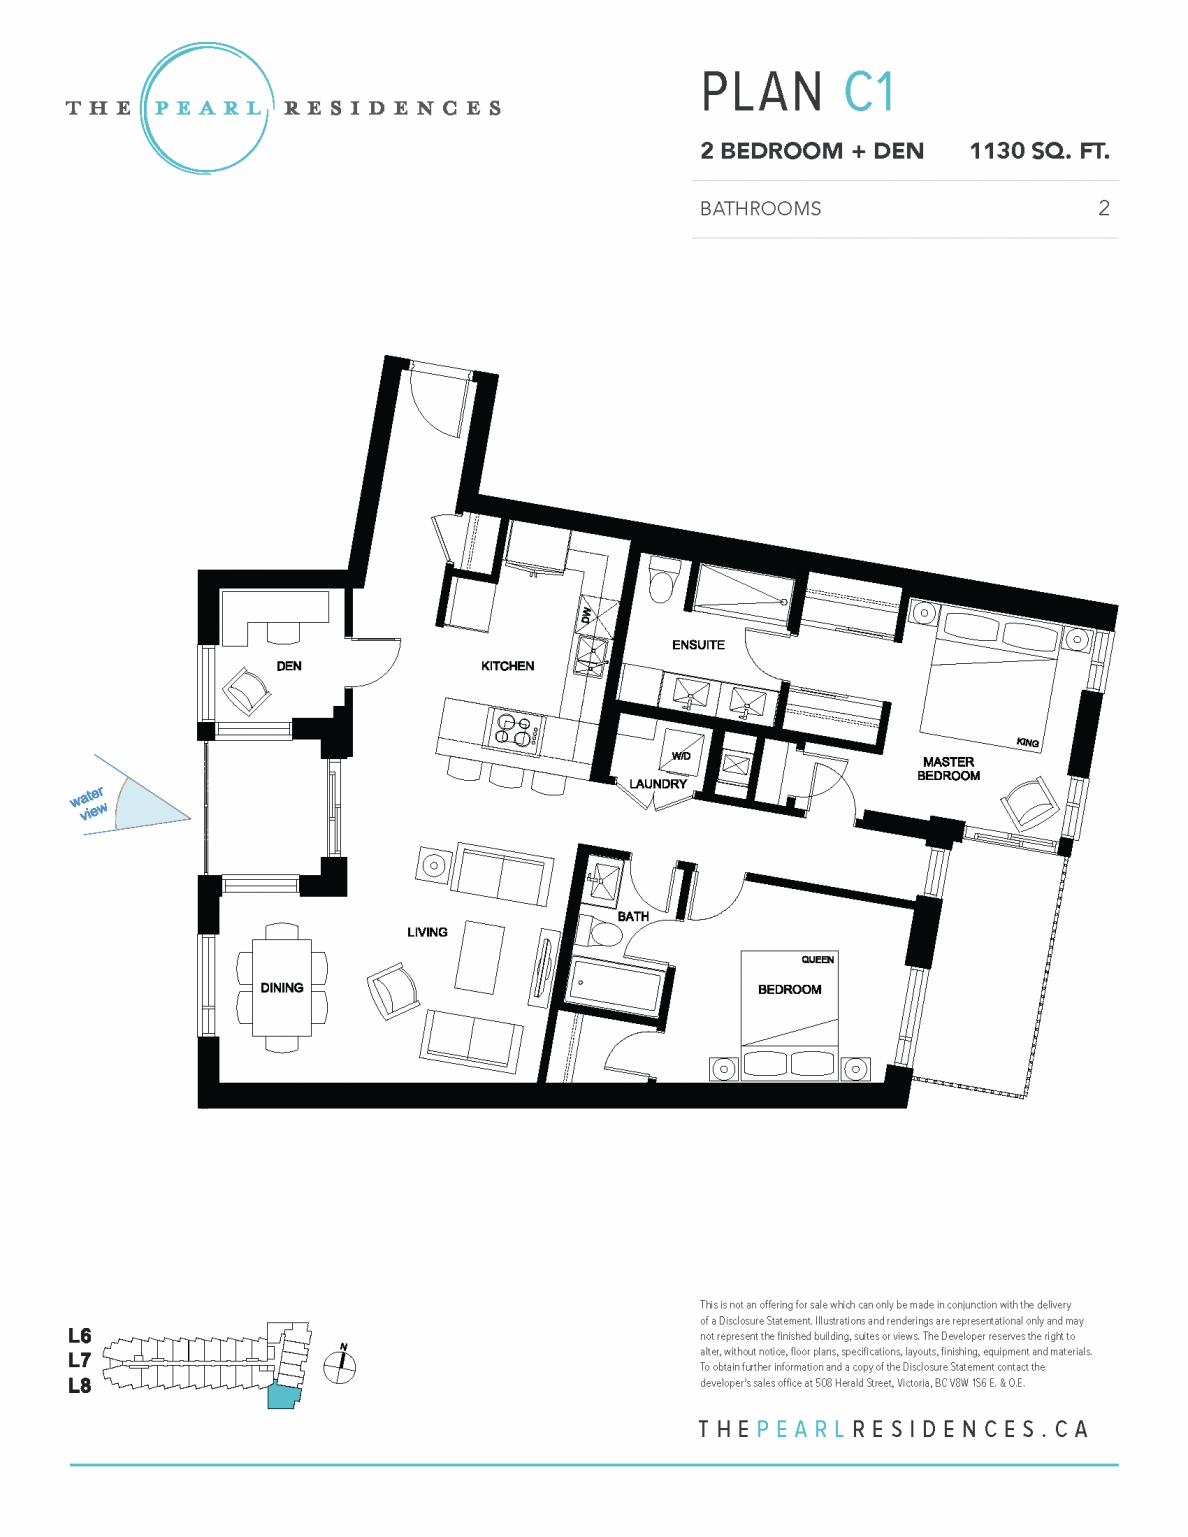 The Pearl Victoria Floor Plan C1 2 Bedroom